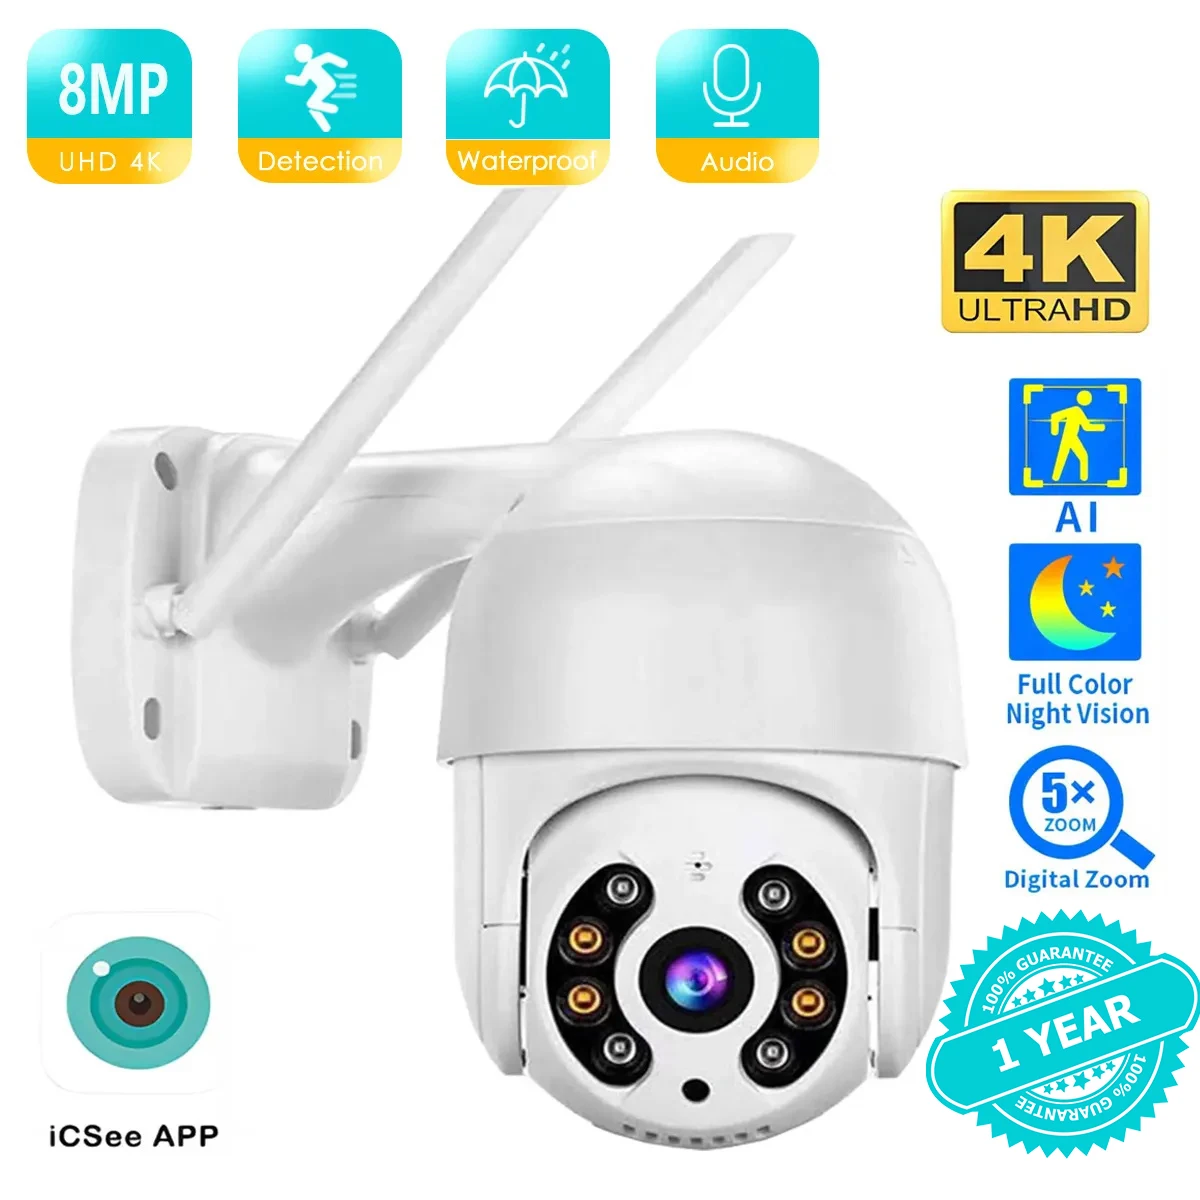 4K 8MP kamera Wifi kamera monitorująca CCTV na zewnątrz wodoodporna kolorowa noktowizor do automatycznego śledzenia 4MP 2MP aplikacja ICSEE